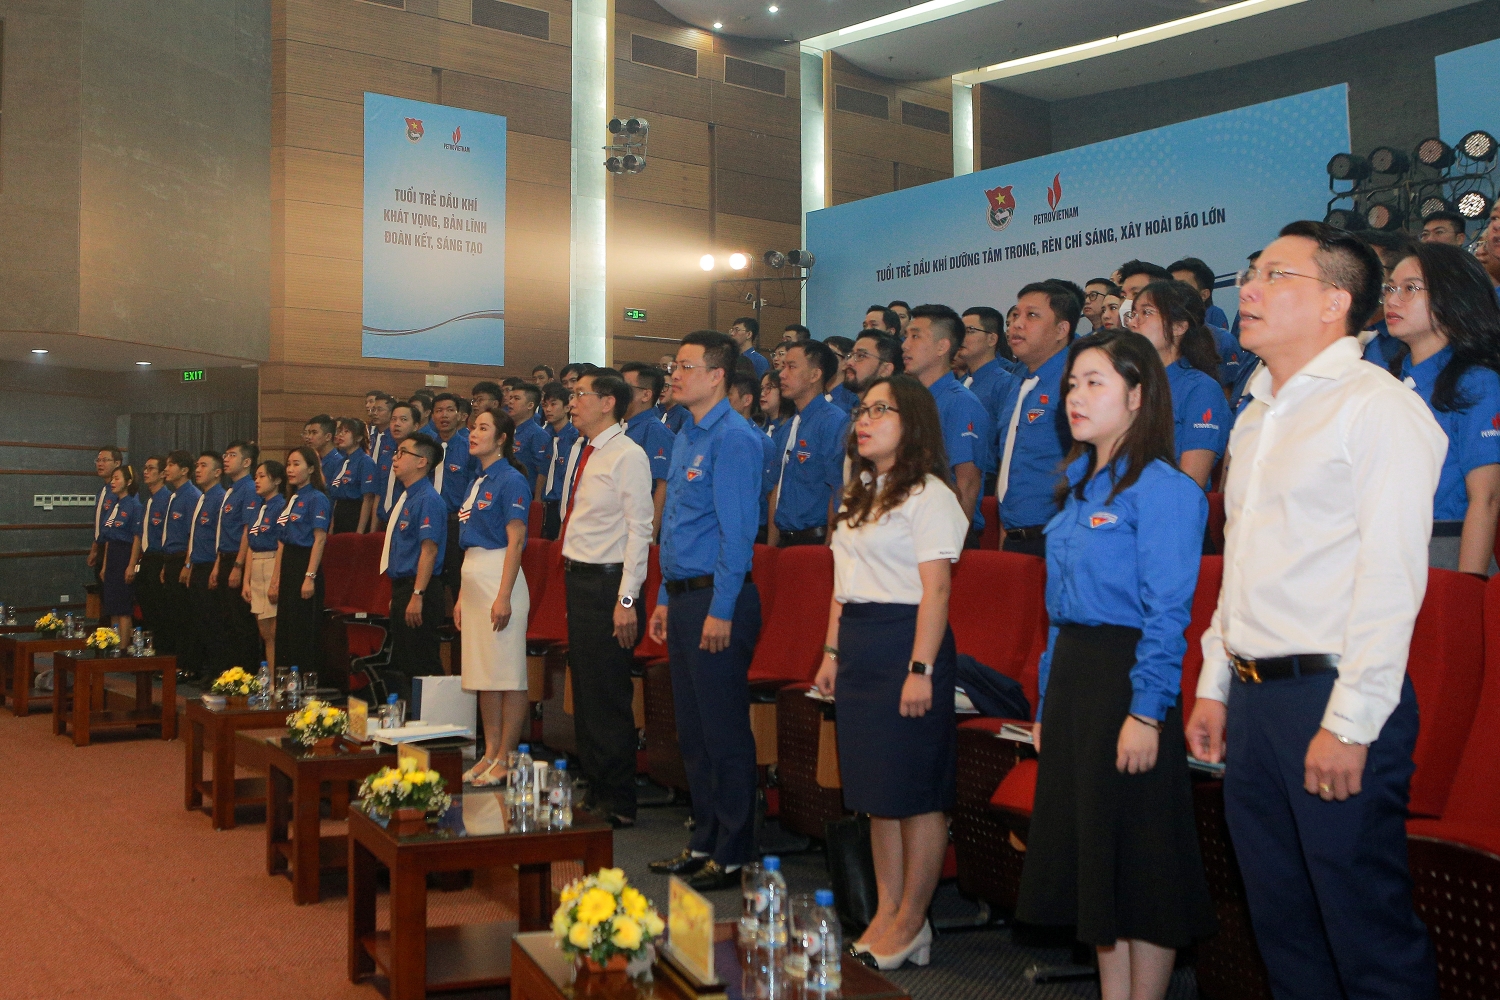 Khai mạc phiên thứ nhất Đại hội đại biểu Đoàn Thanh niên Tập đoàn lần thứ III, nhiệm kỳ 2022-2027